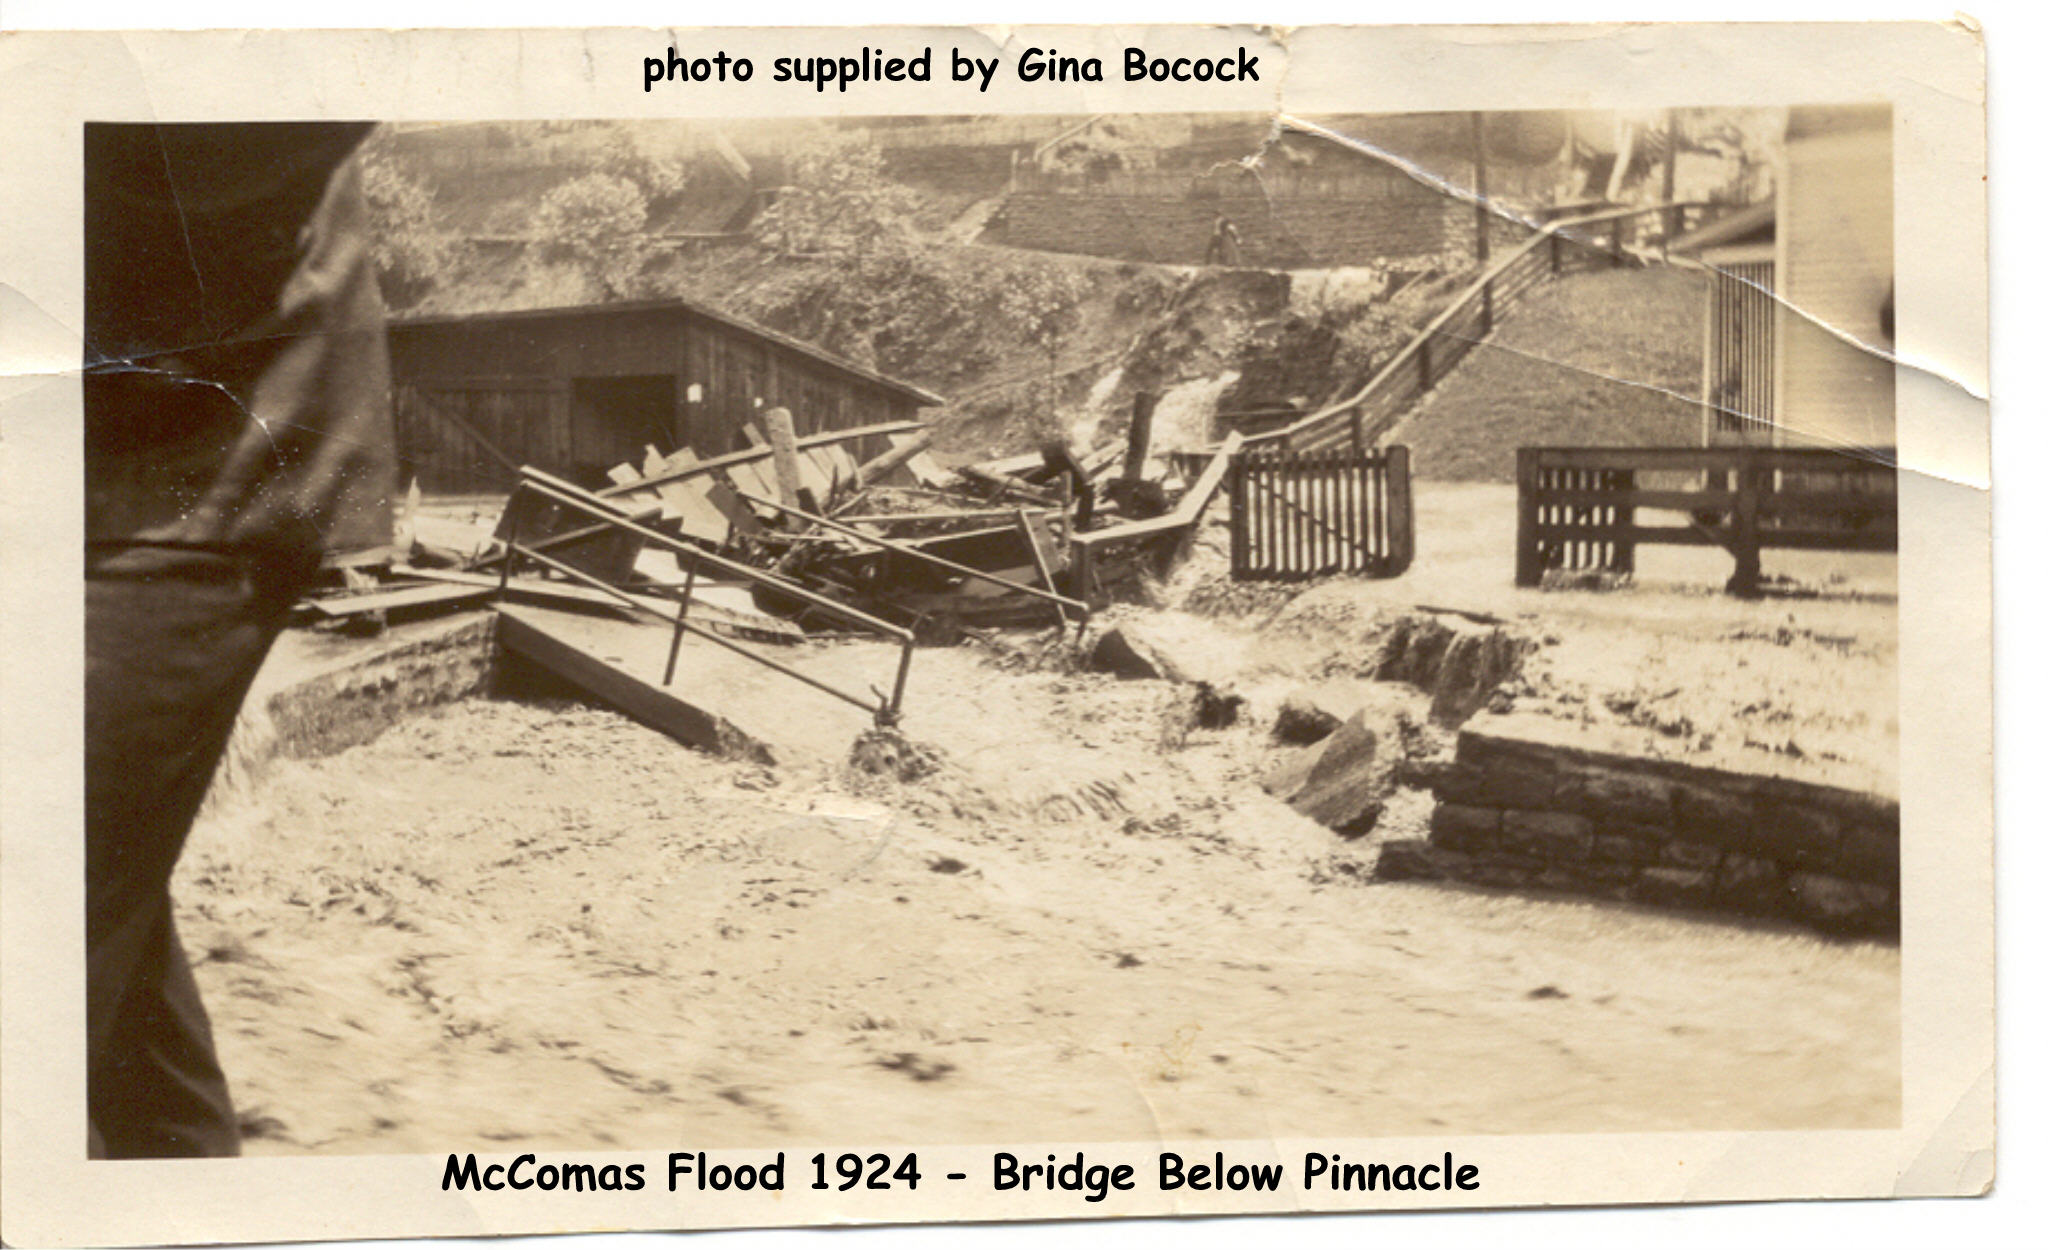 Foot bridge at Pinnacle being washed away.